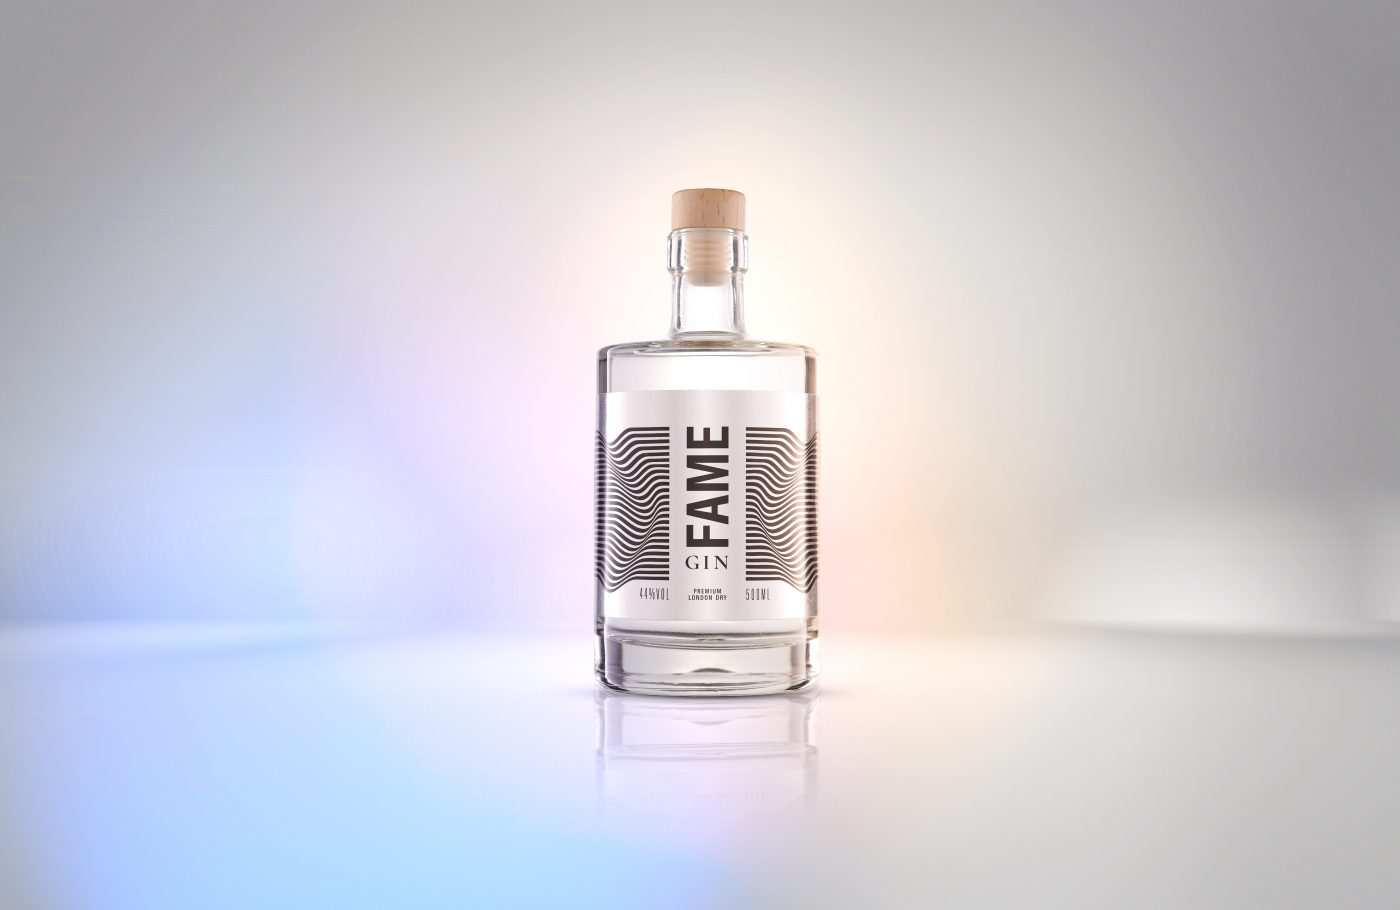 eine Flasche Fame Gin steht in einer virtuellen Welt mit Regenbogenfarben.